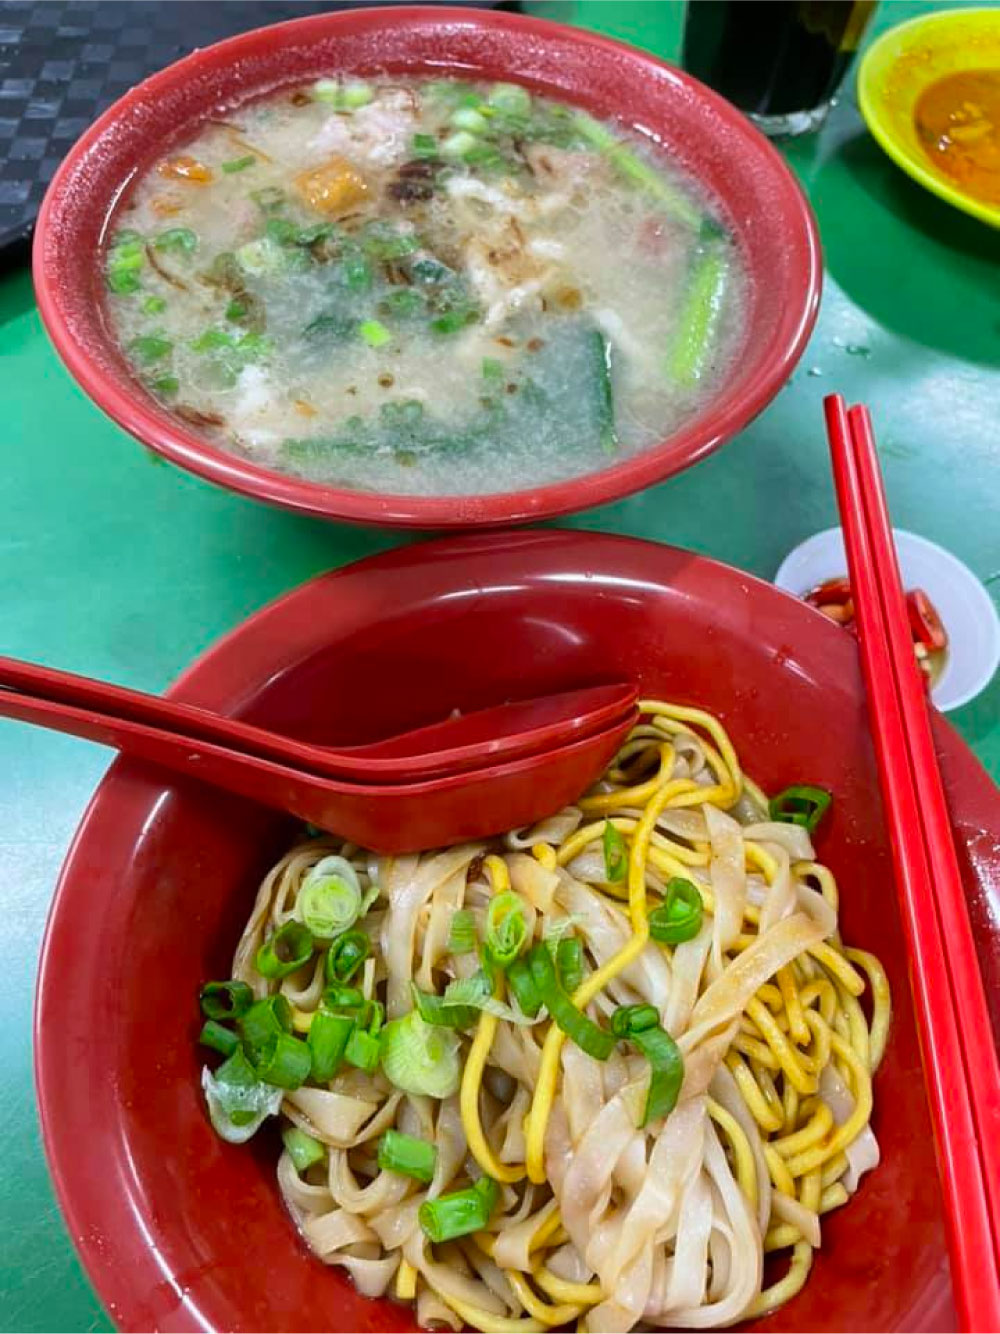 pork noodles at Old Village 老村庄